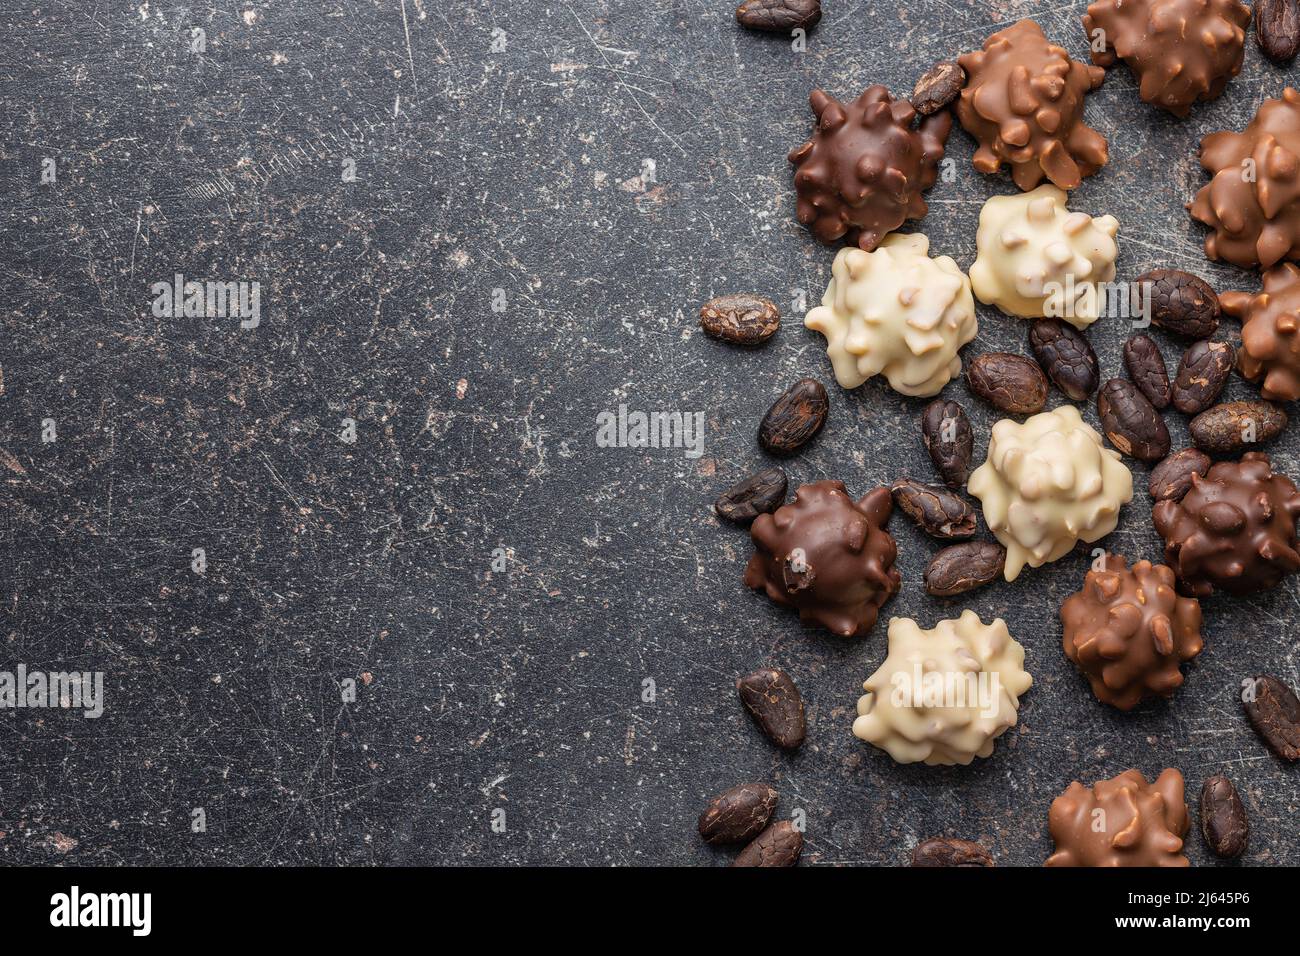 Truffes au chocolat et fèves de cacao. Pralines sucrées sur une table noire. Vue de dessus. Banque D'Images